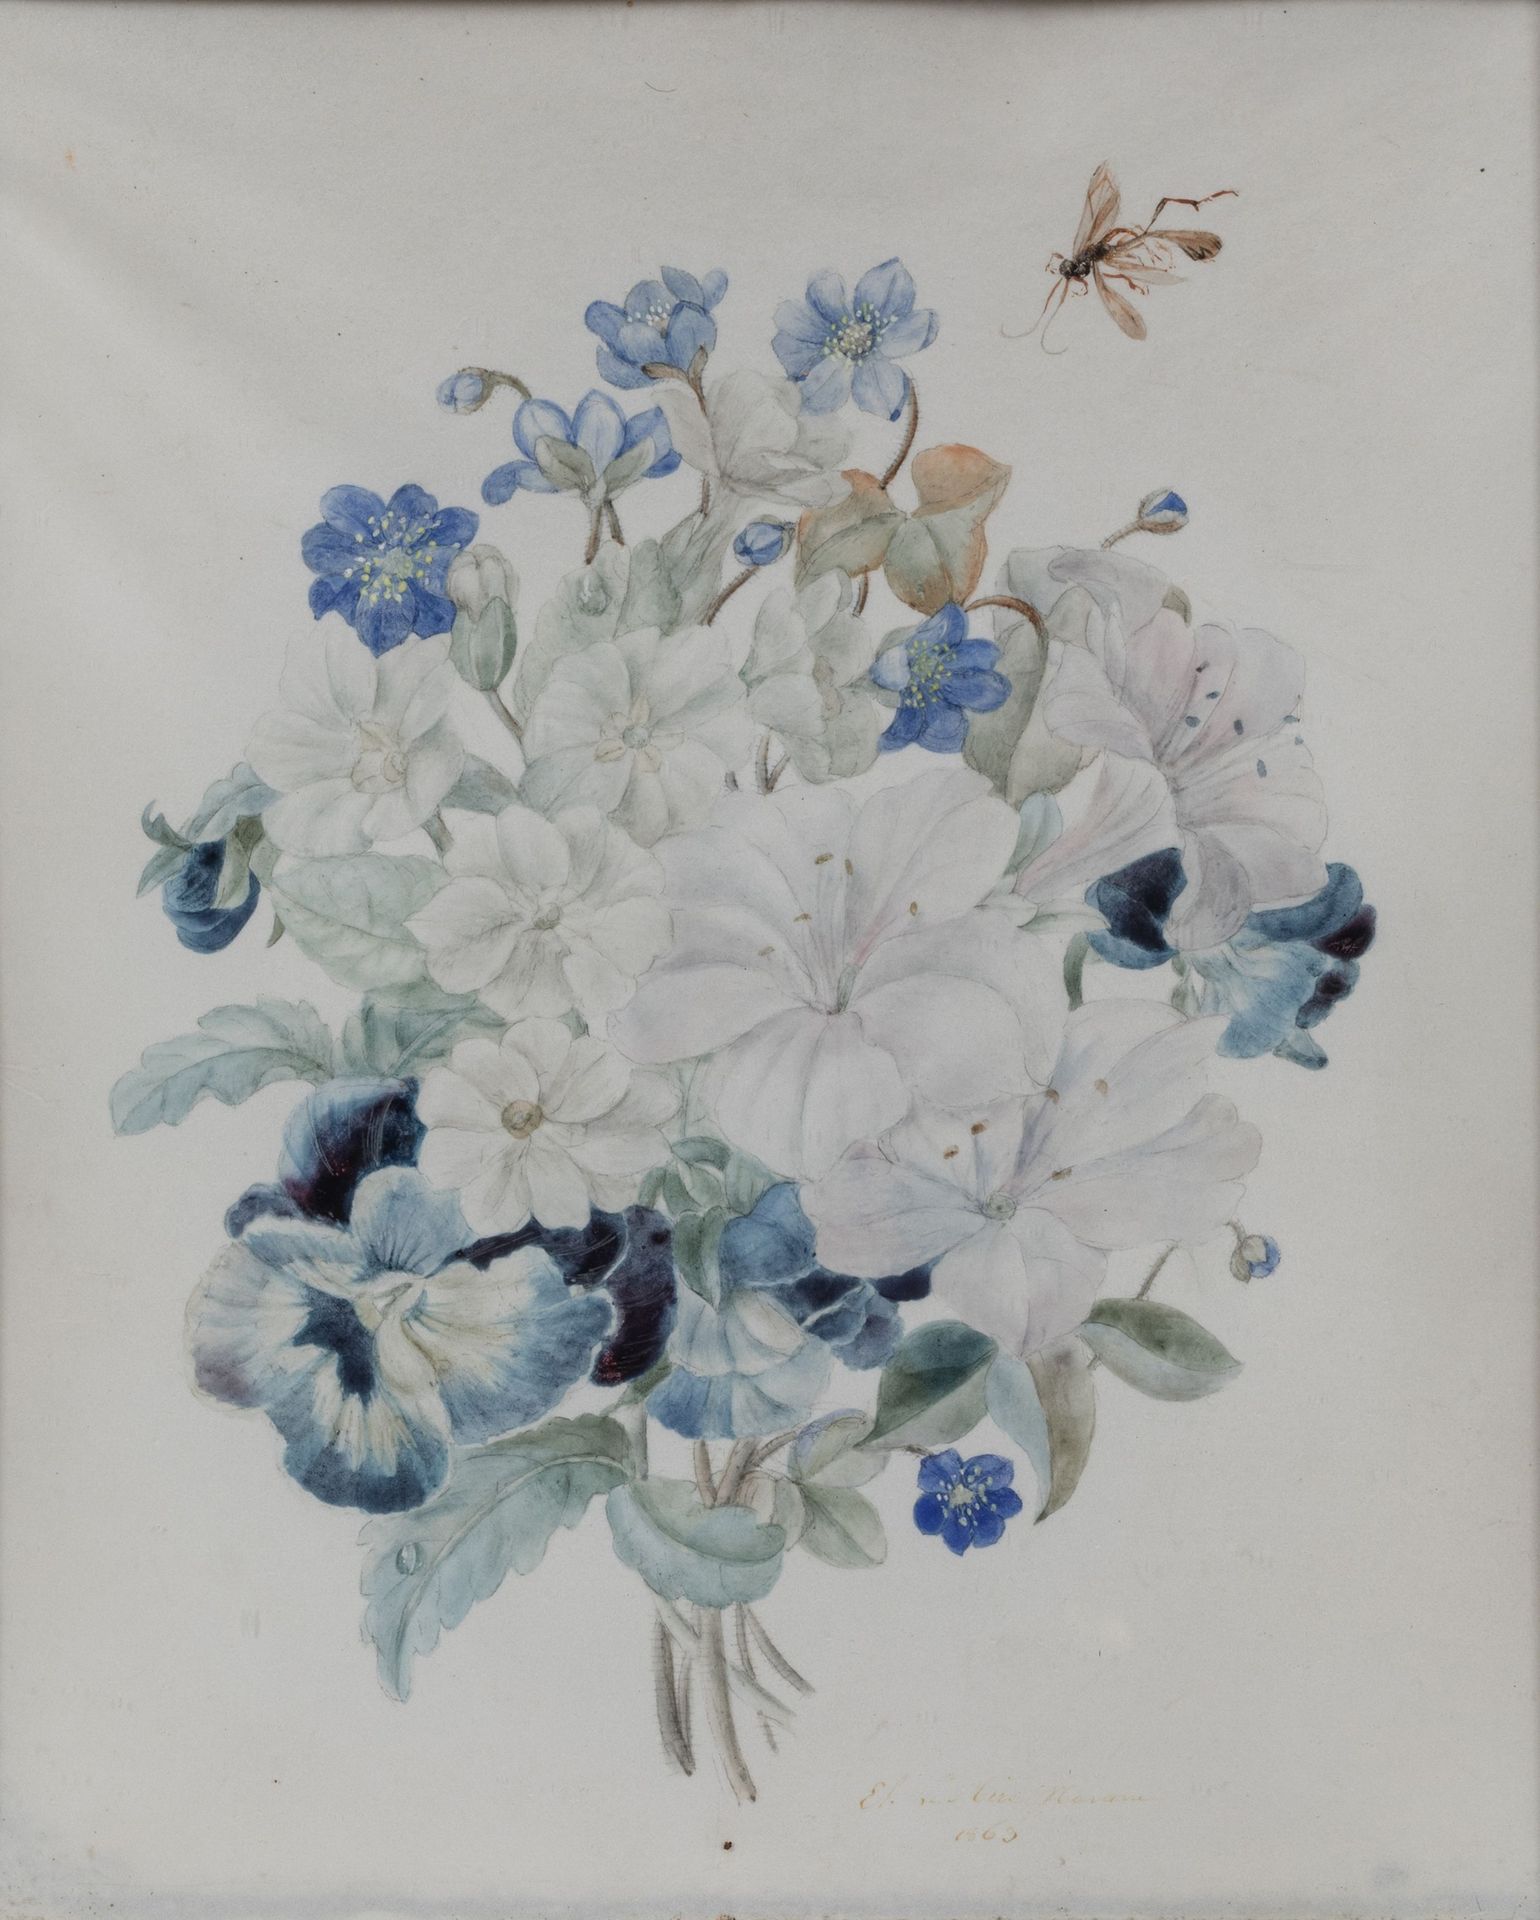 Null 埃莉萨-埃米莉-纳瓦雷-莱米尔 (1807-1868)

向黄蜂投掷白色和蓝色的花朵。 

水彩画，右下方有签名和日期1863年。

高度：25厘米。&hellip;